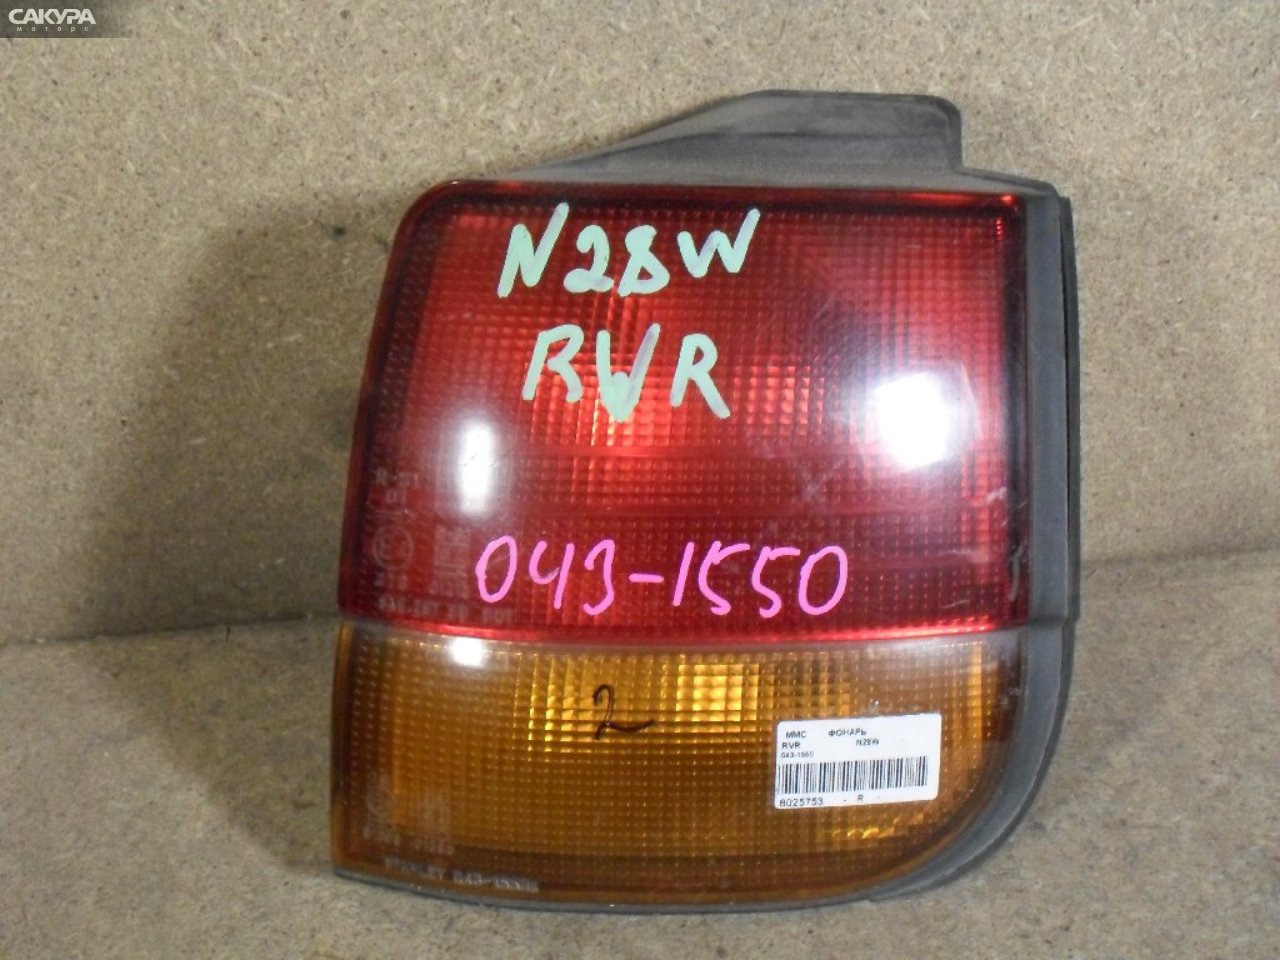 Фонарь стоп-сигнала правый Mitsubishi RVR N28W 043-1550: купить в Сакура Абакан.